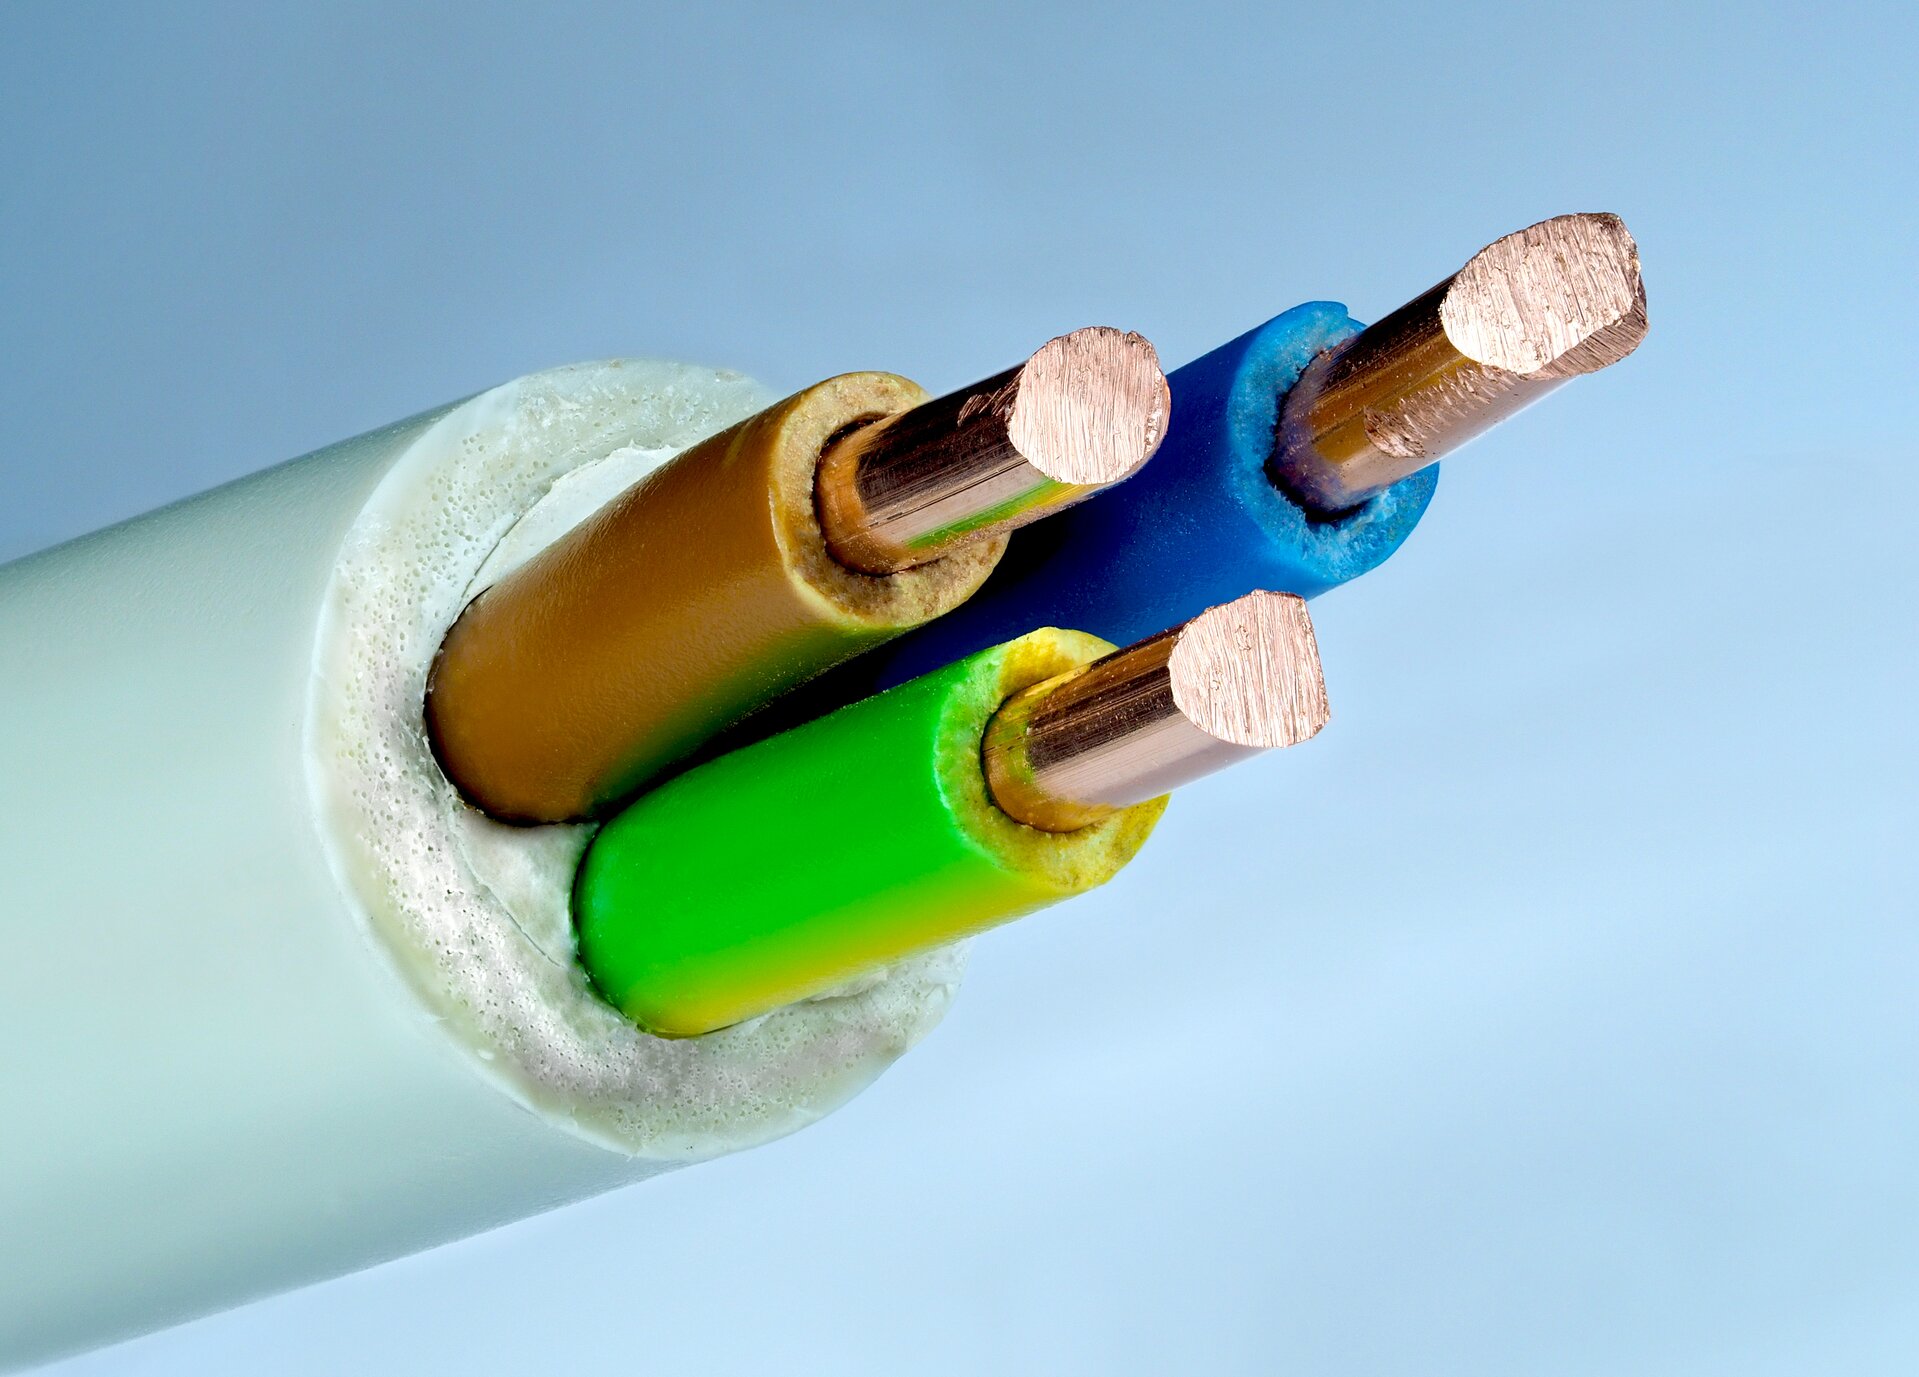 Rys. 4b. Zdjęcie przedstawia kabel trójżyłowy. Składa się on z zewnętrznej, gumowej otoczki w kolorze białym. Wewnątrz otoczki znajdują się trzy przewody miedziane. Jeden otoczony jest gumową izolacją w kolorze brązowym, drugi w kolorze niebieskim, trzeci w kolorze zielono‑żółtym.